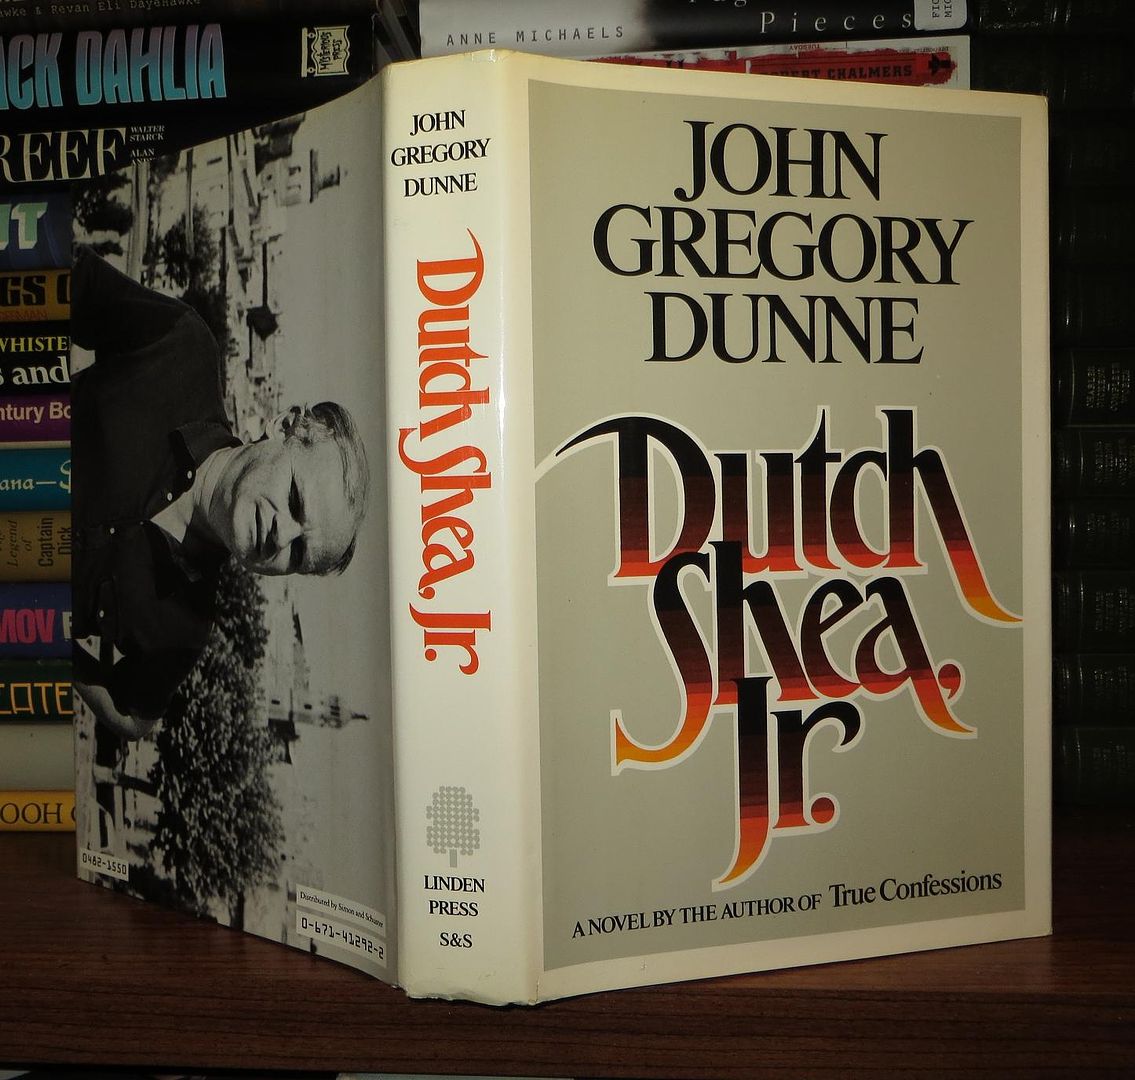 DUNNE, JOHN GREGORY - Dutch Shea, Jr.